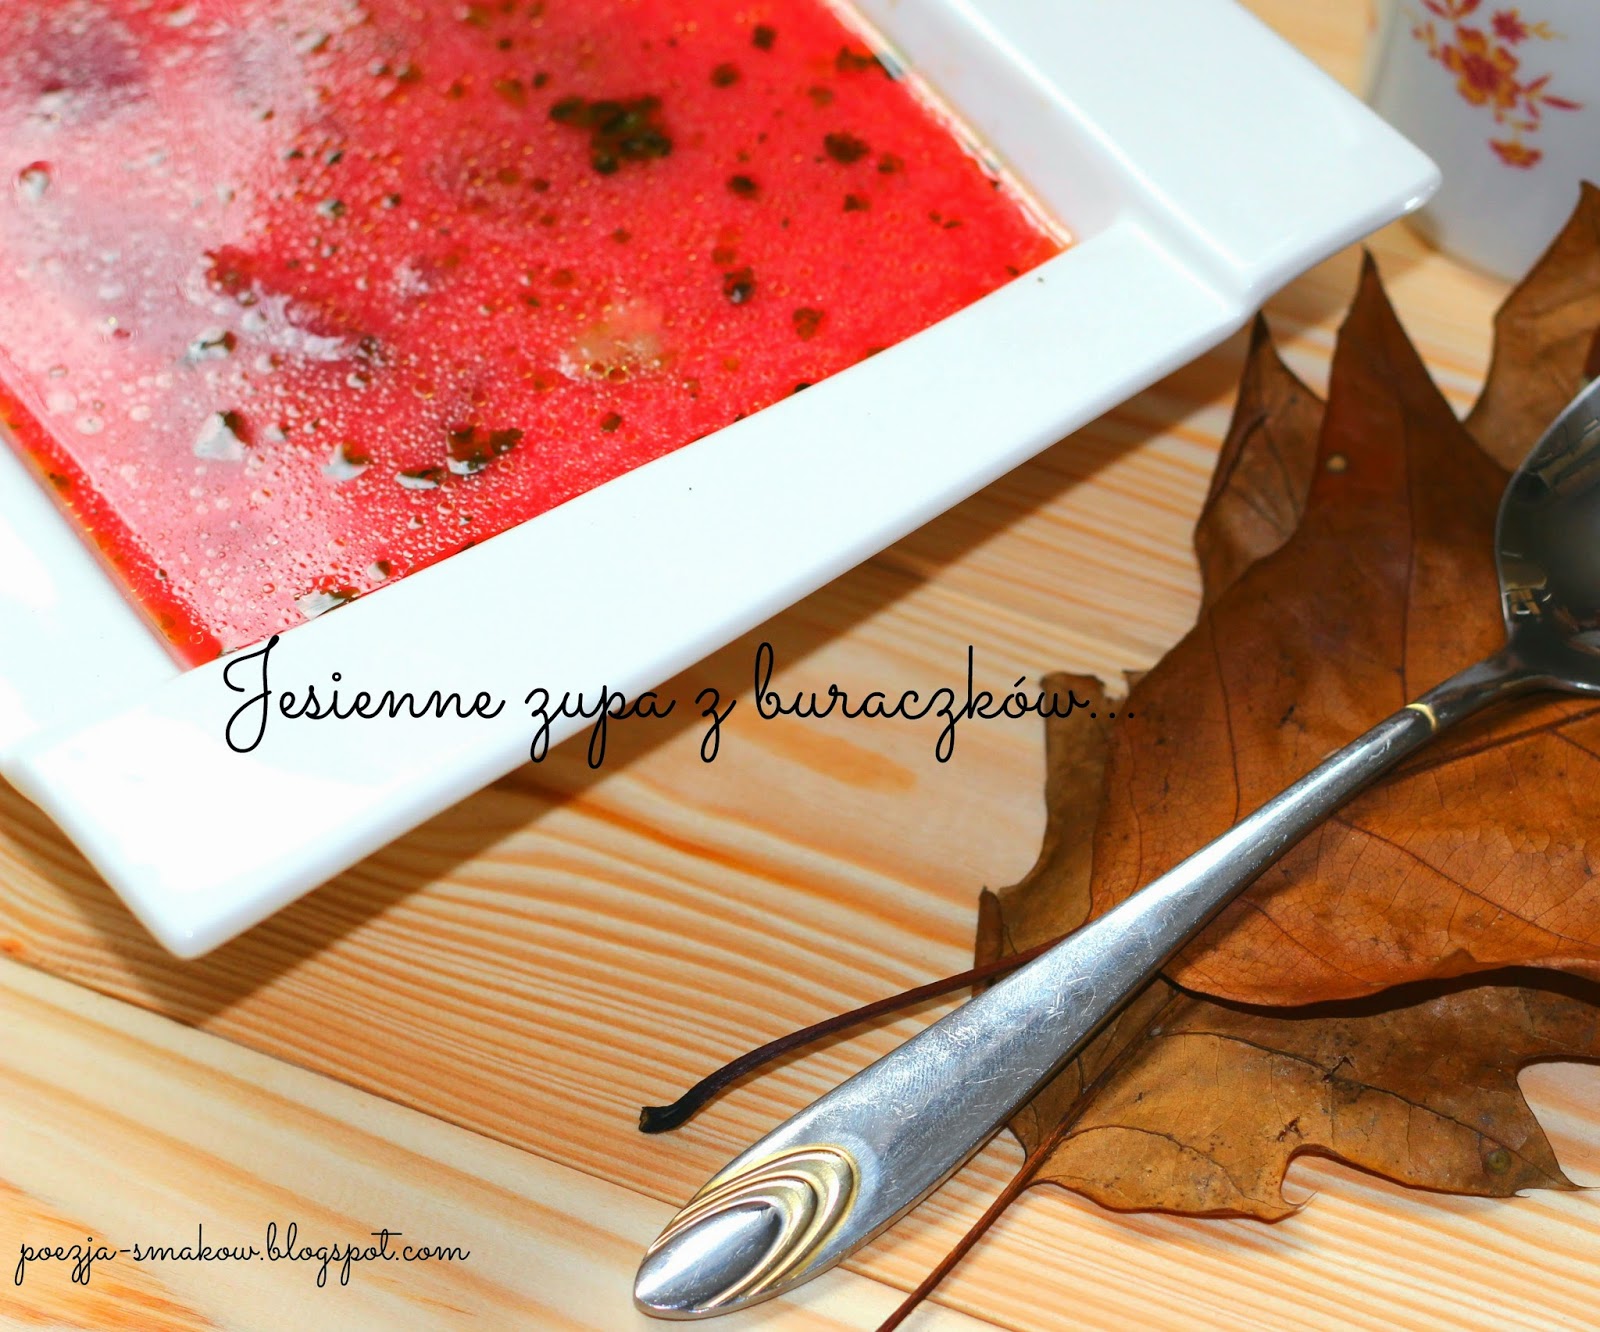 Jesienna zupa buraczkowa – czerwona ( z dojrzałych buraków).